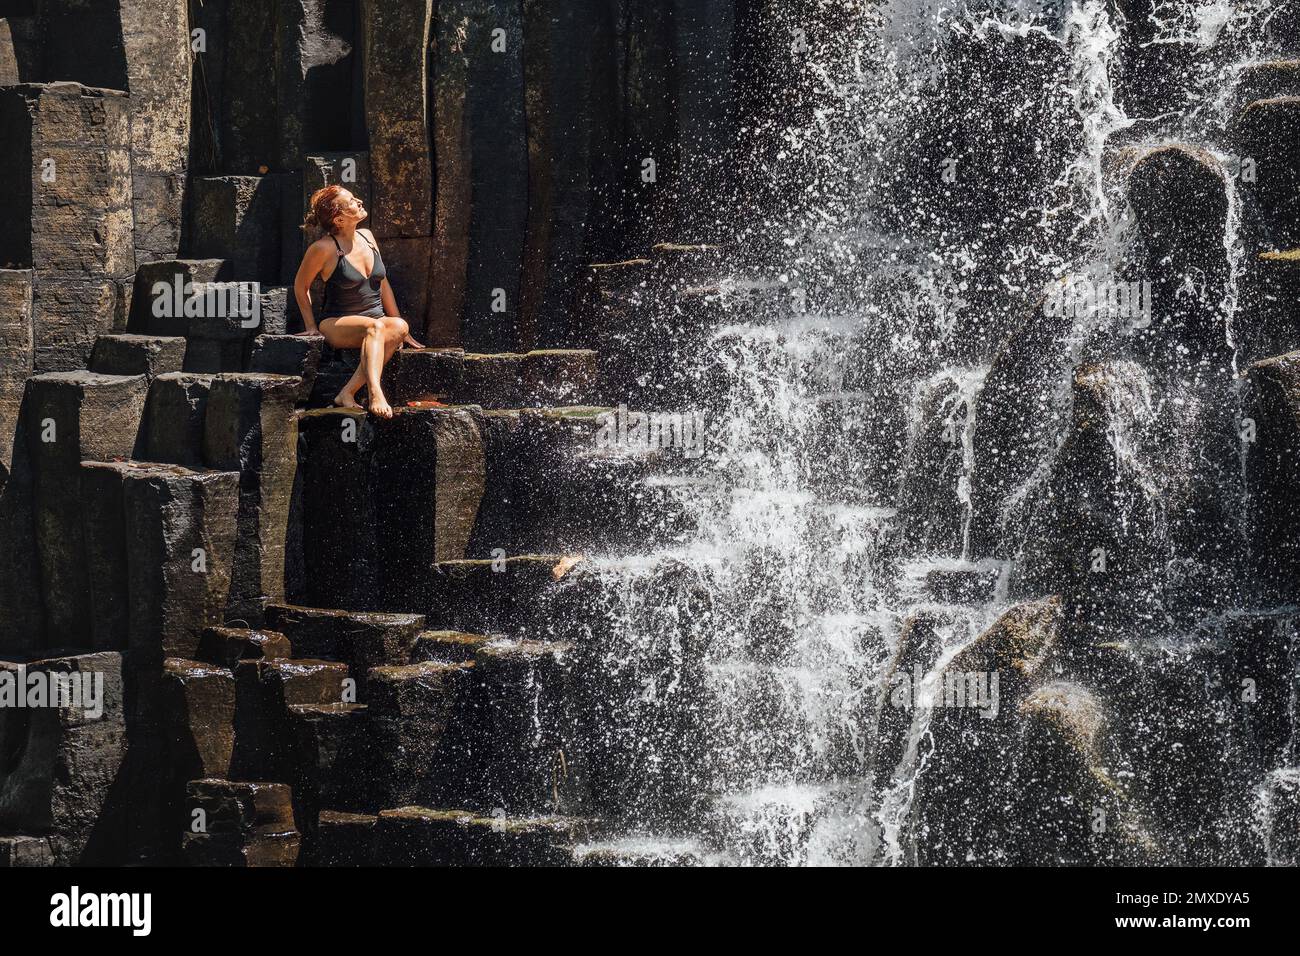 Femme caucasienne en maillot de bain noir appréciant les ruisseaux d'eau tombant sur des cascades de pierre volcanique noire. Chutes d'eau de Rochester - populaire tou Banque D'Images